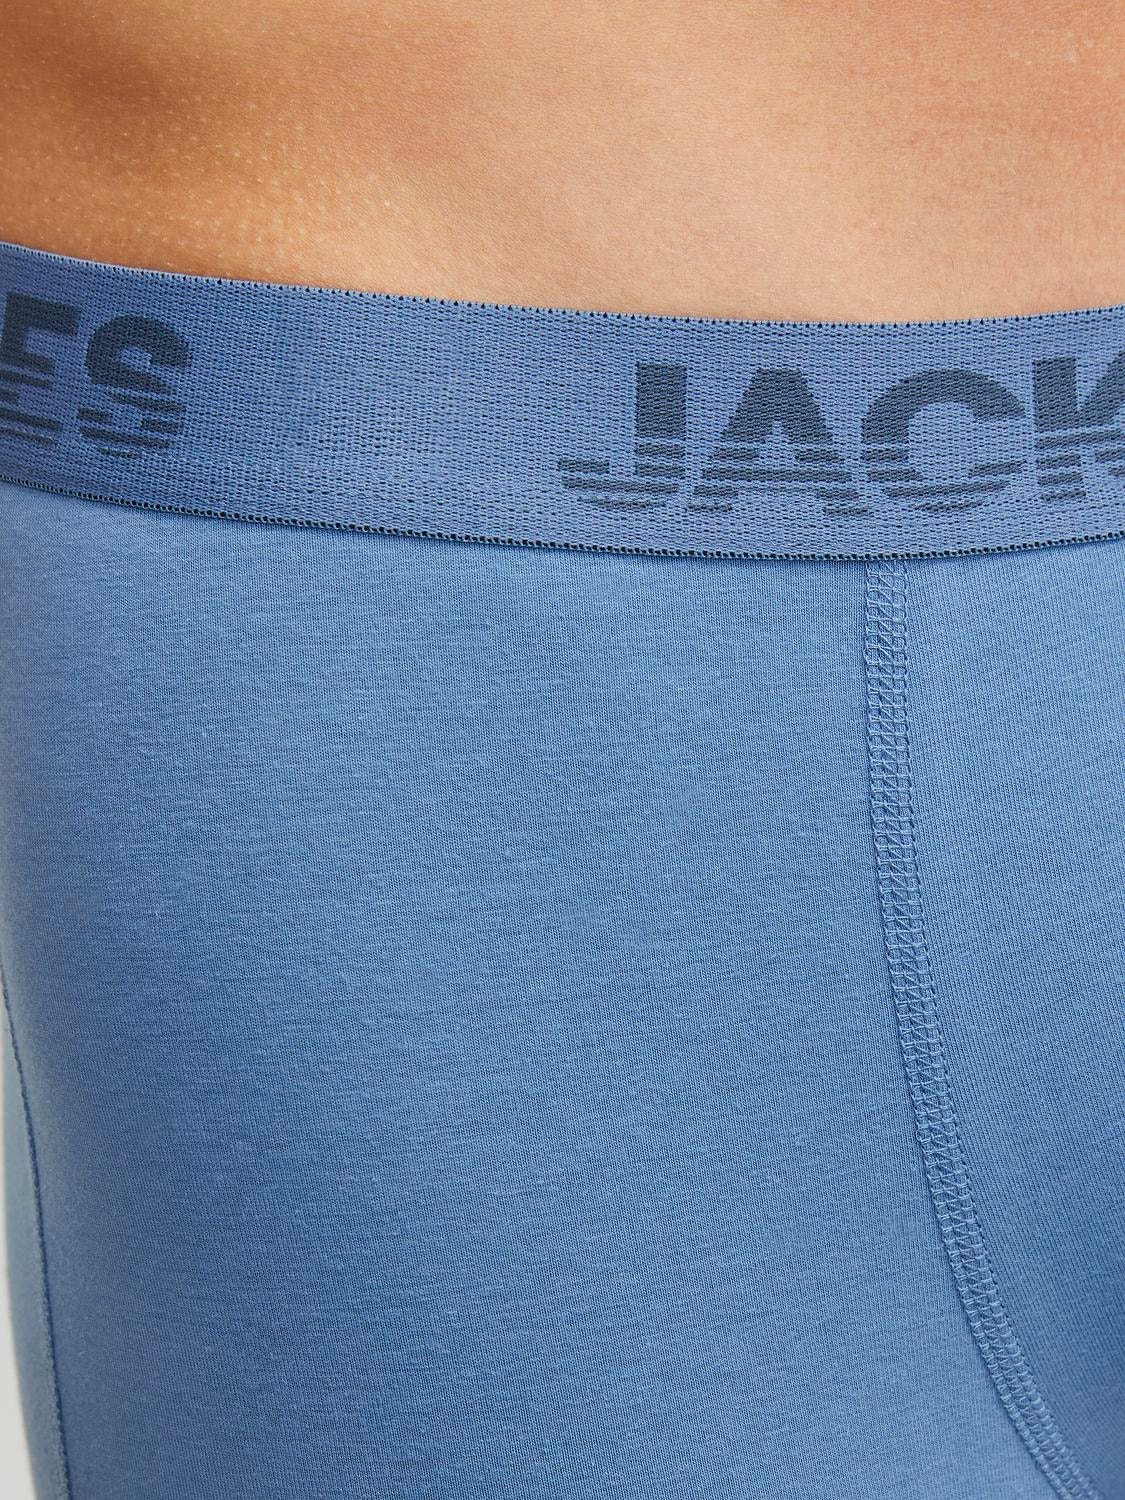 Jack & Jones 12er-pack Boxershorts -Black - 12250732